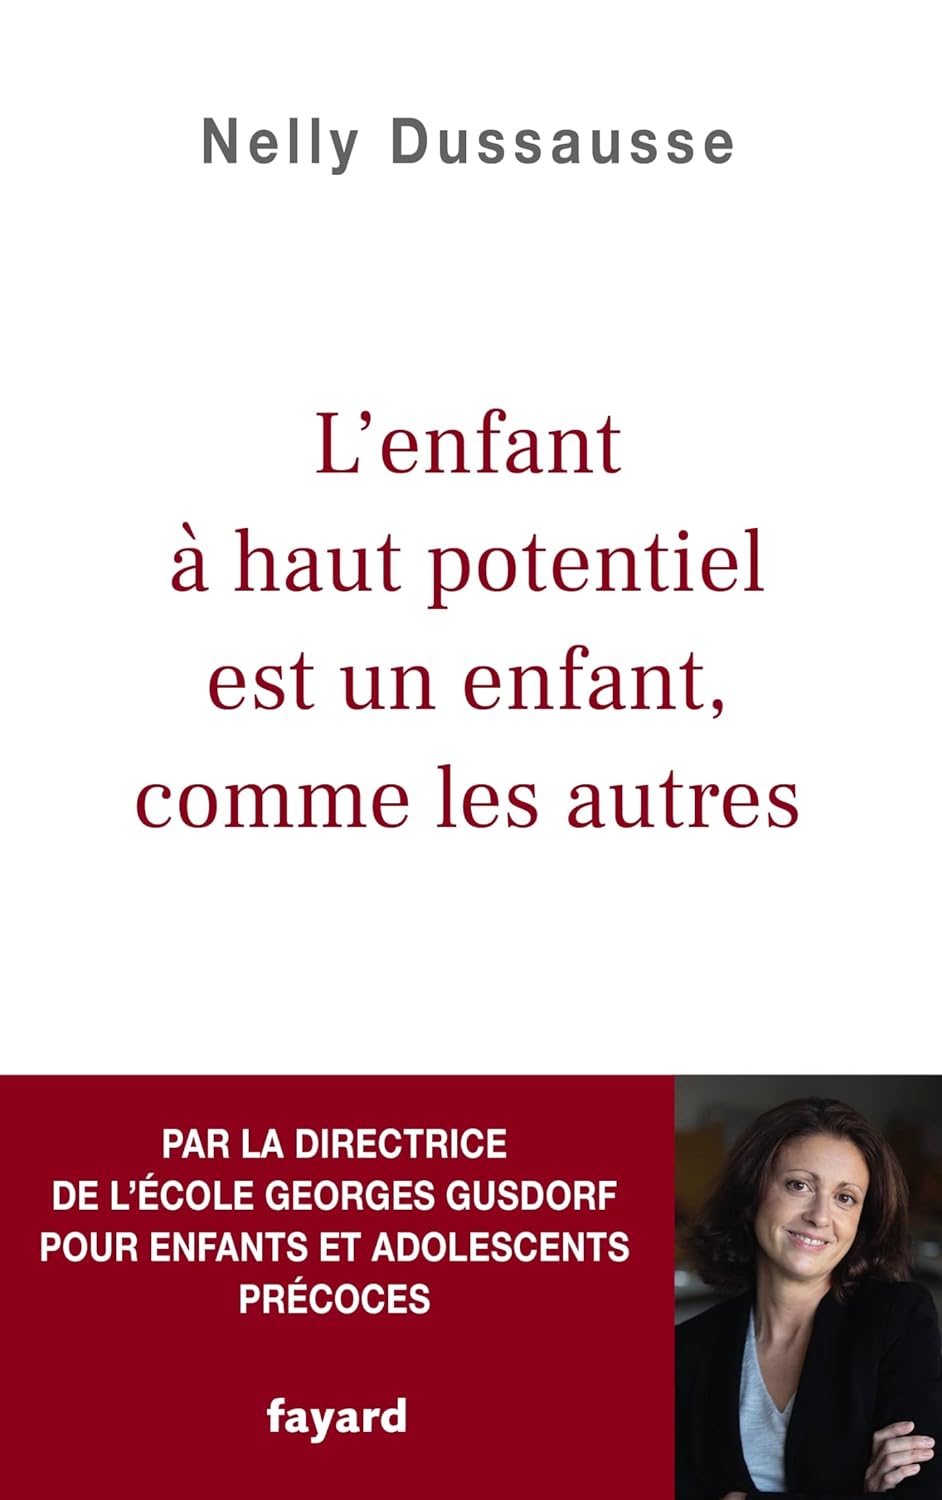 Nelly Dussausse: L'enfant à haut potentiel est un enfant, comme les autres (Français language, Fayard)